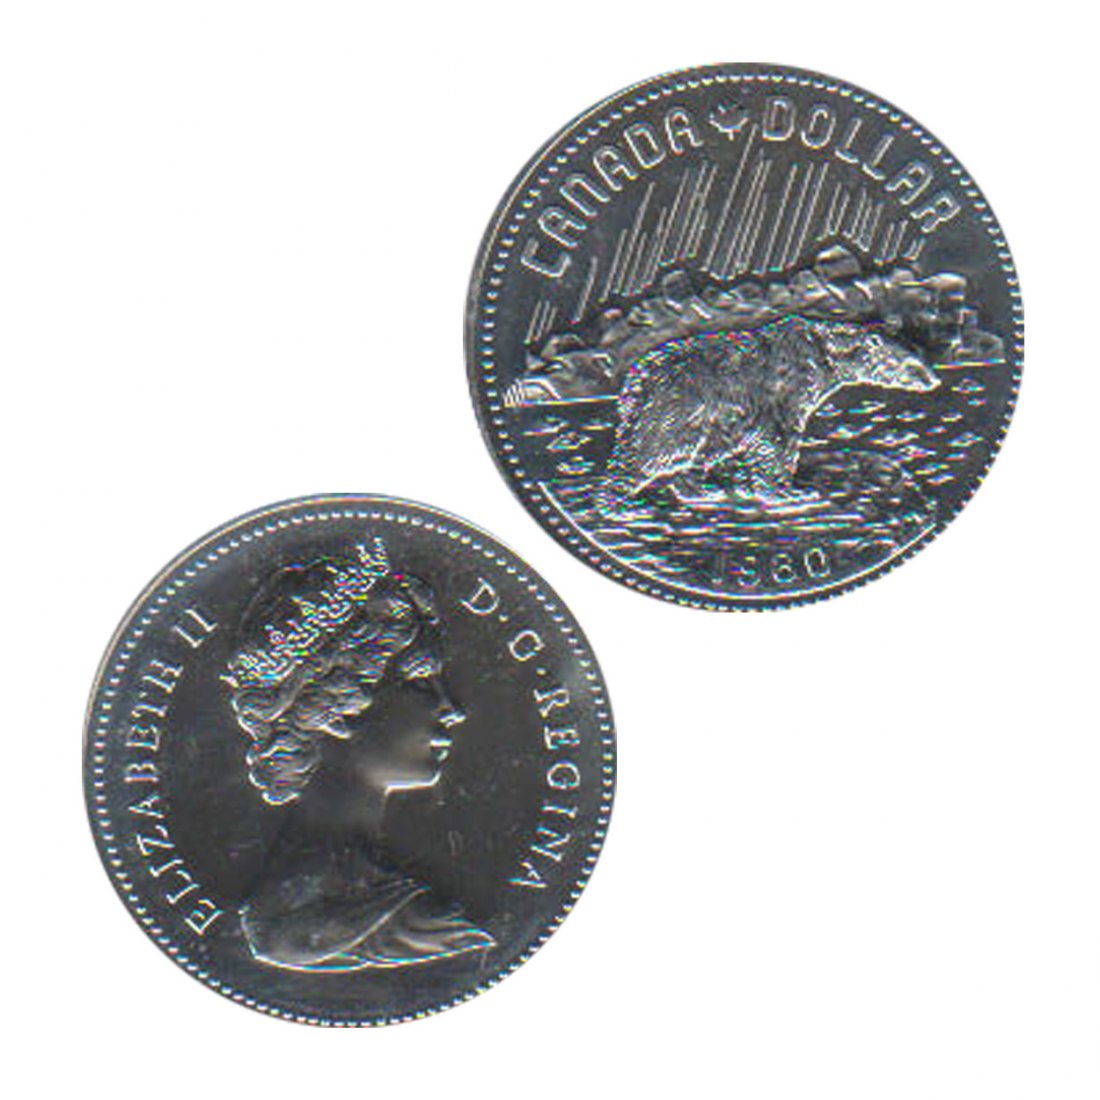  Kanada 1$-Silbermünze *100 Jahre Arktische Inseln Bei Kanada - Eisbär* 1980   